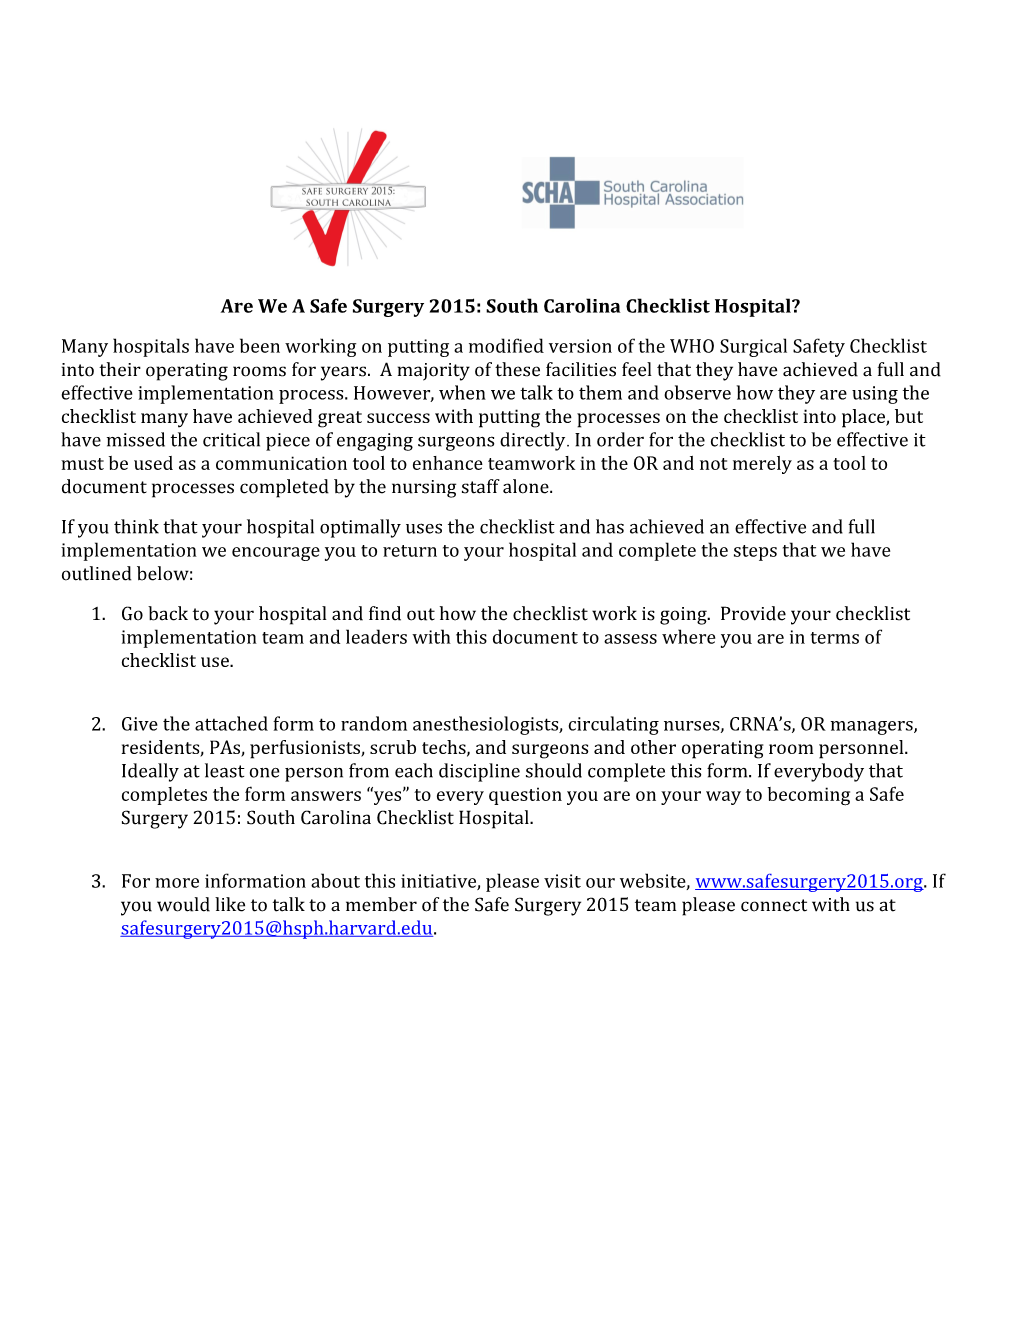 Are We a Safe Surgery 2015: South Carolina Checklist Hospital?